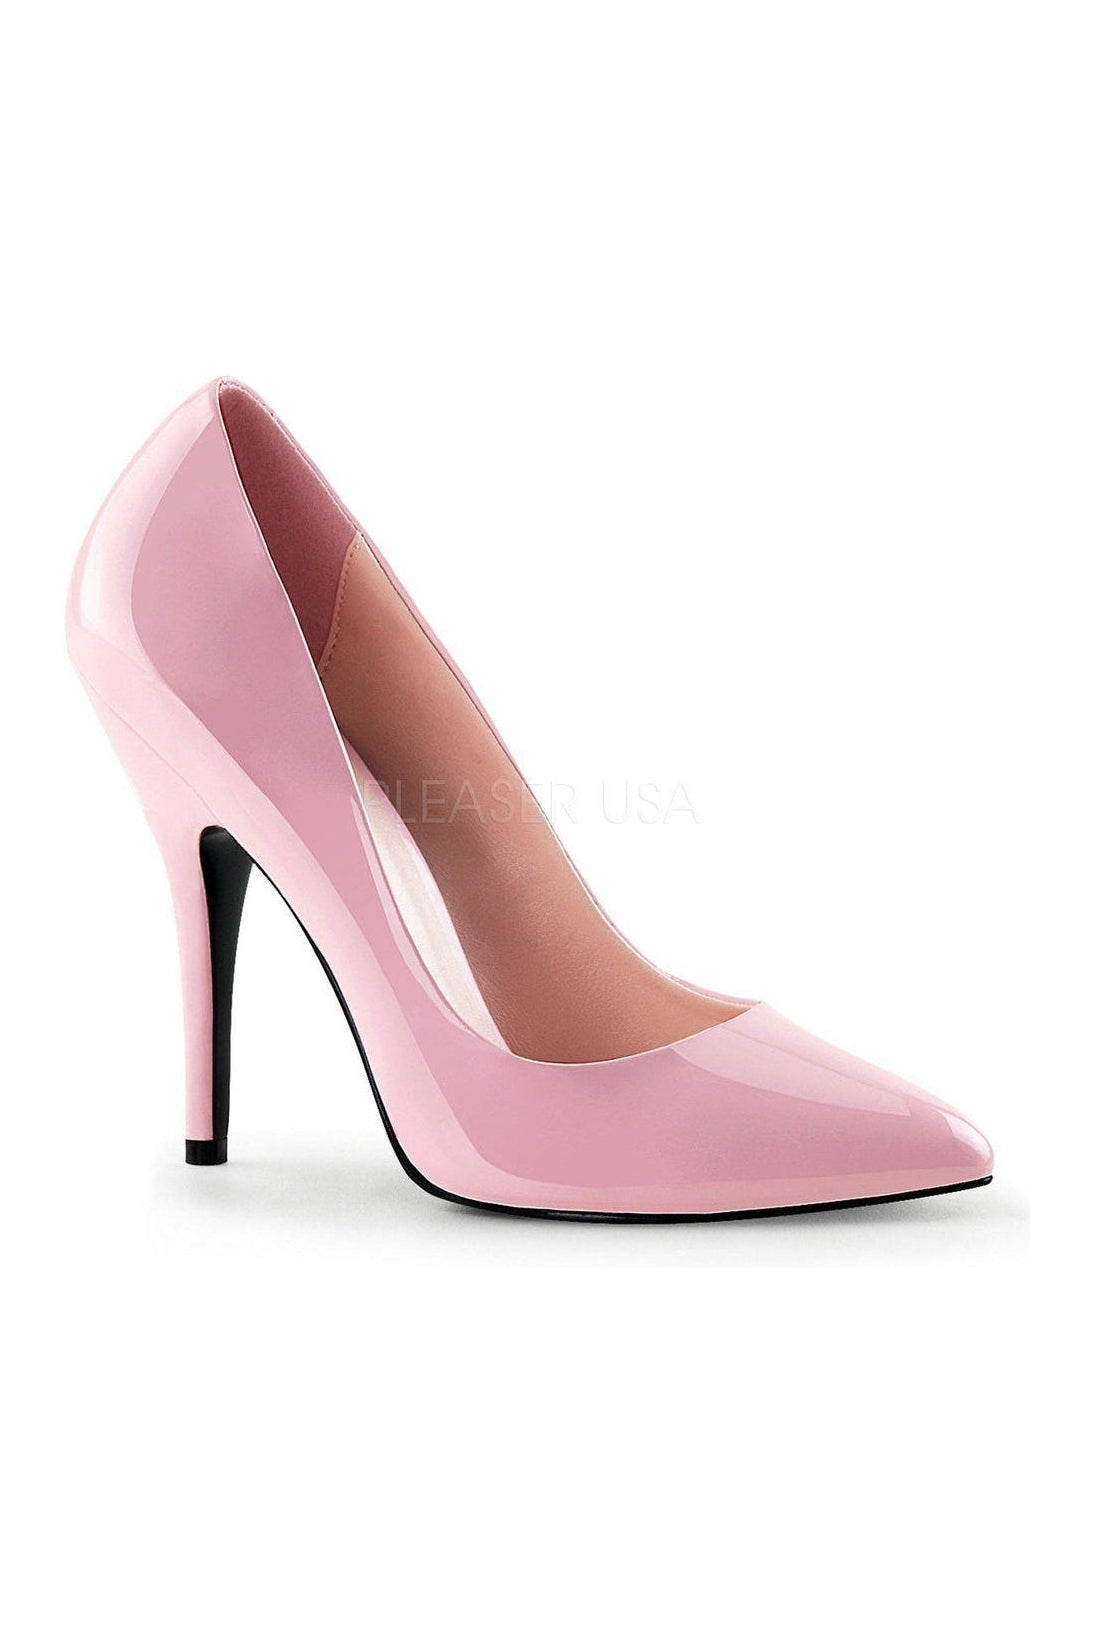 drag queen heels size 14